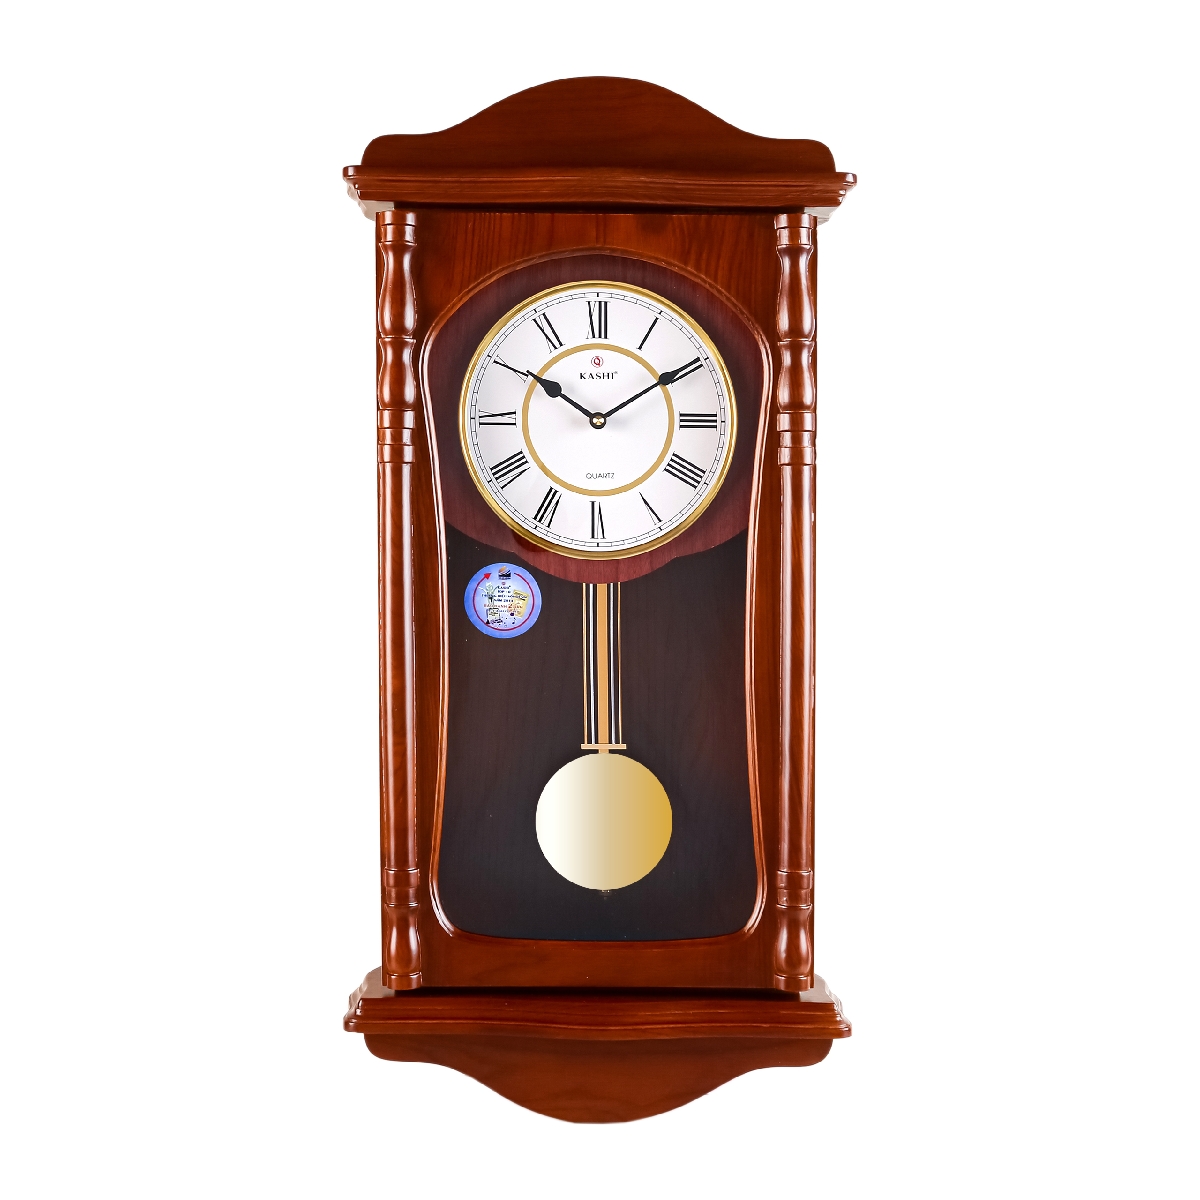 Đồng hồ treo tường quả lắc New HM830 số la mã Kashi Clock